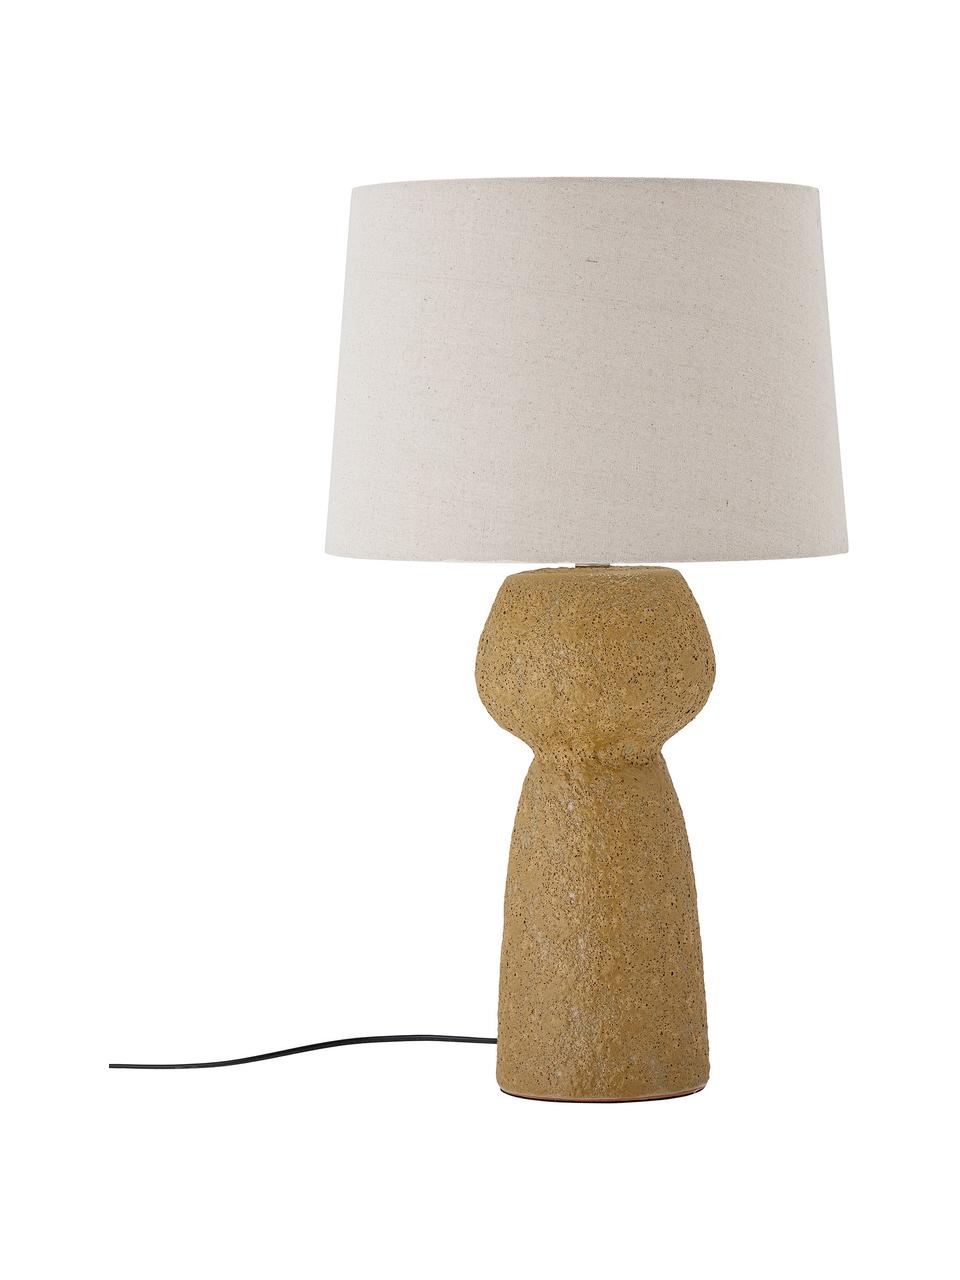 Große Tischlampe Lavin aus Steingut, Lampenschirm: Baumwolle, Lampenfuß: Steingut, Gelb, Weiß, Ø 41 x H 71 cm